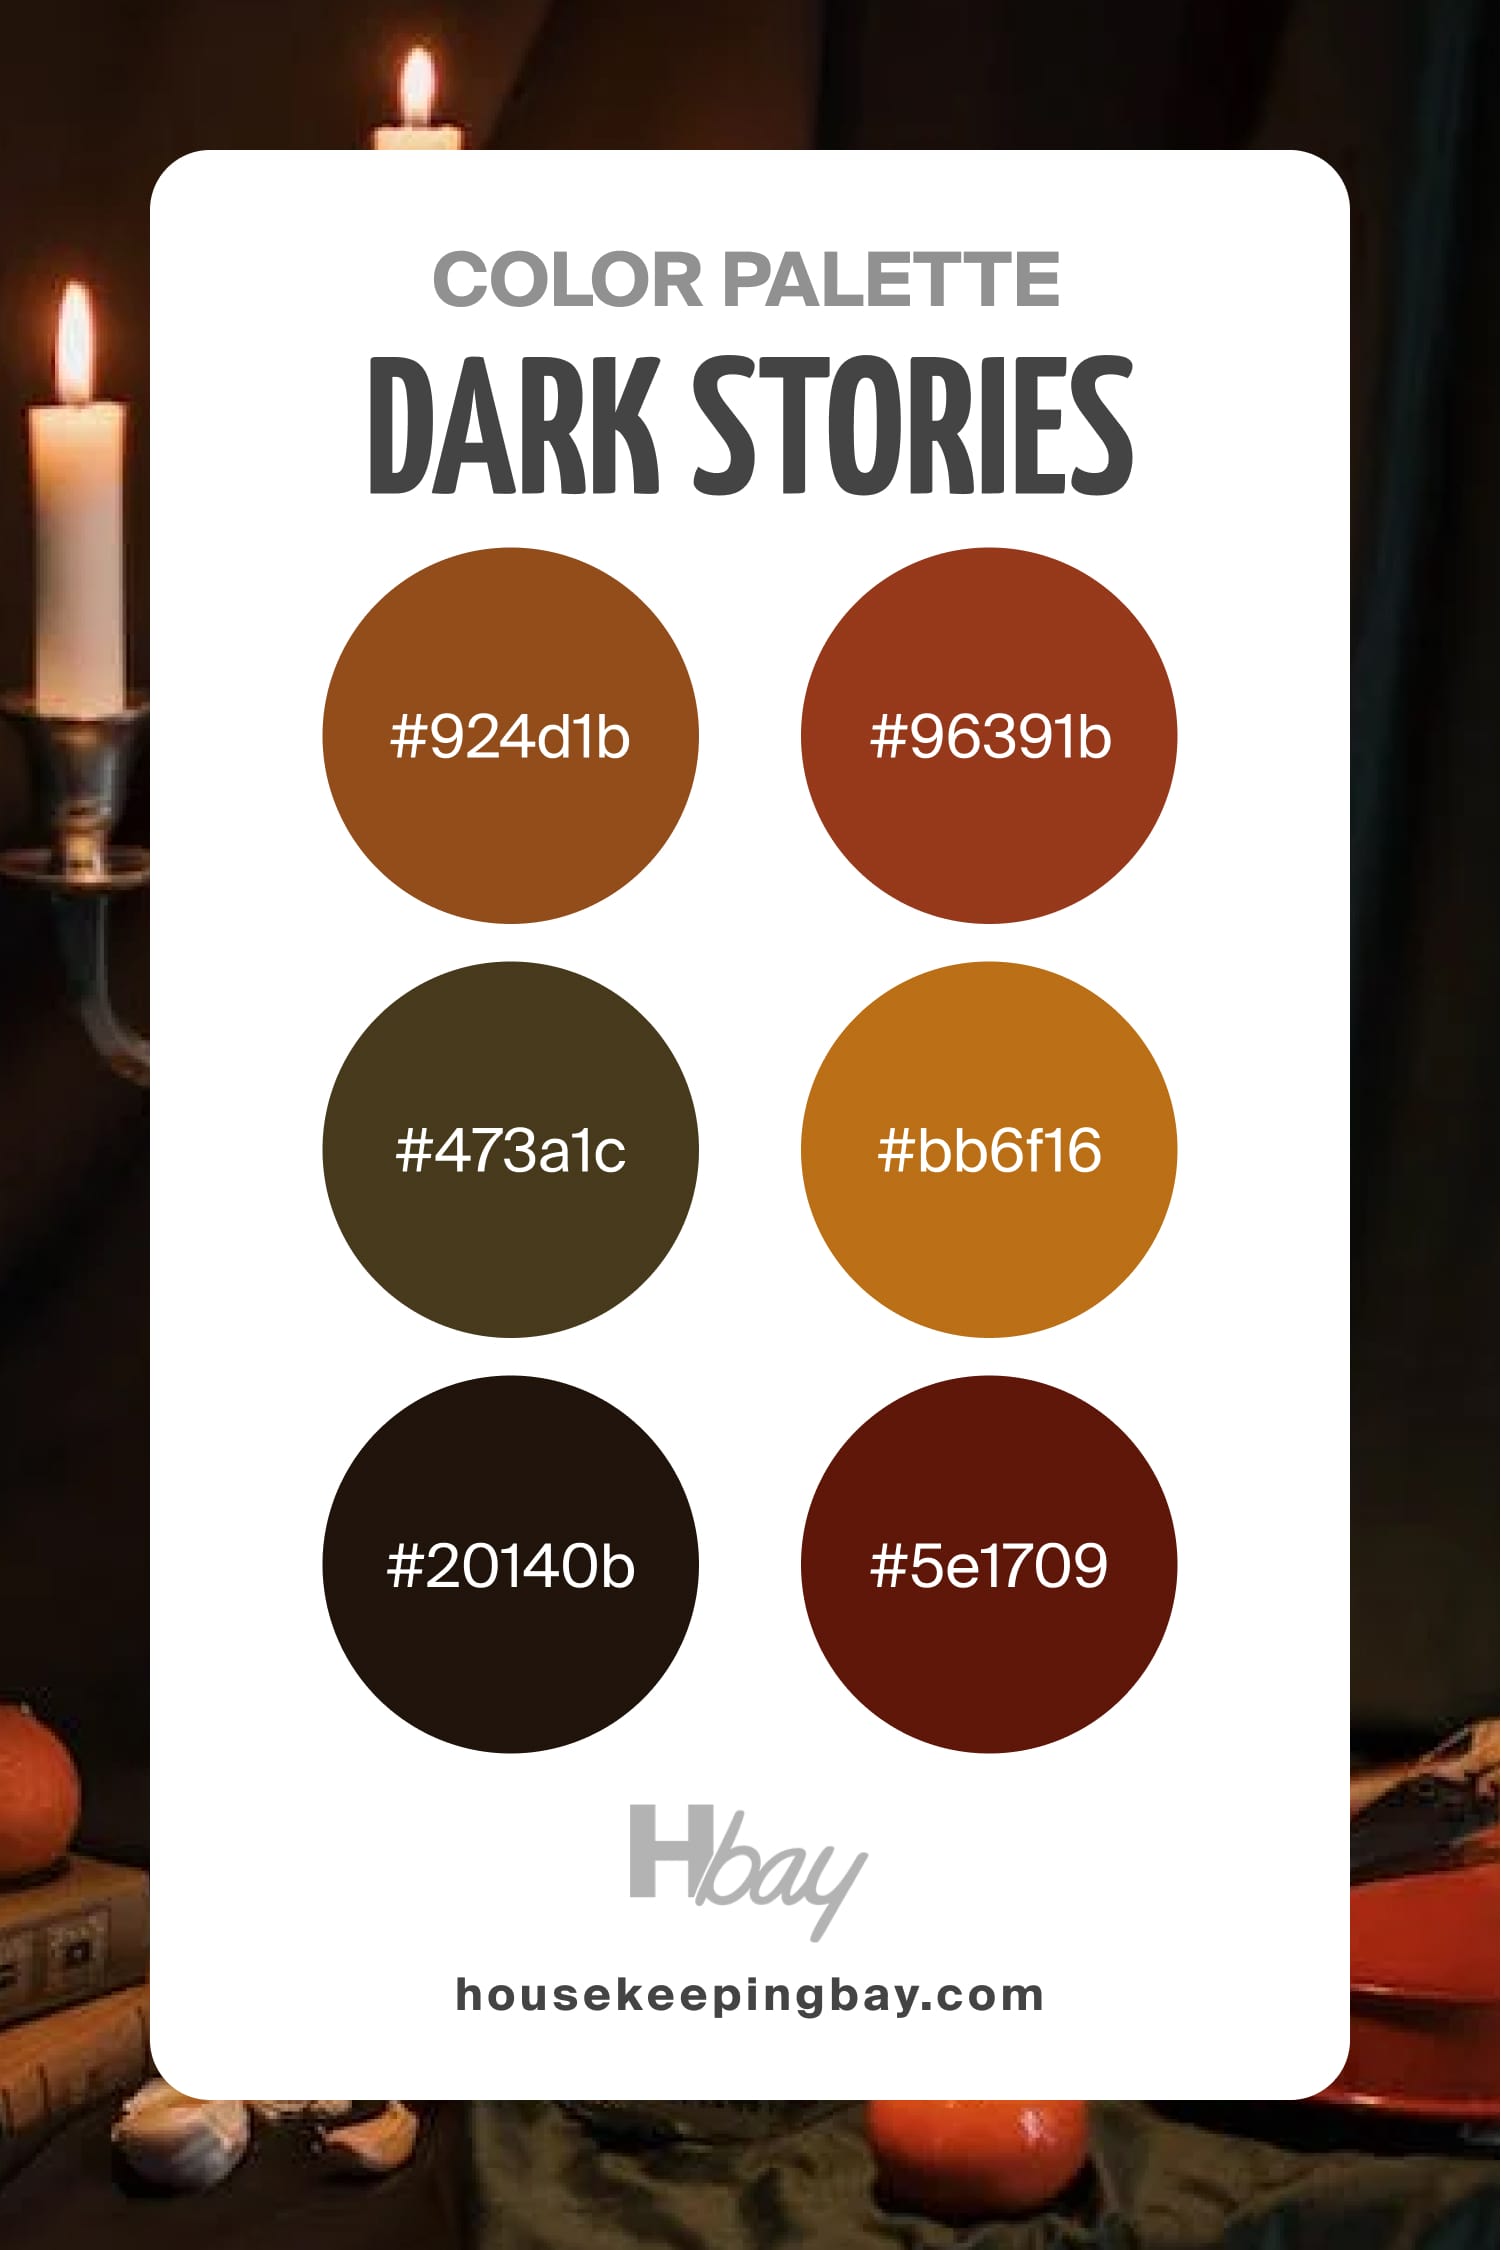 Dark Stories Palette